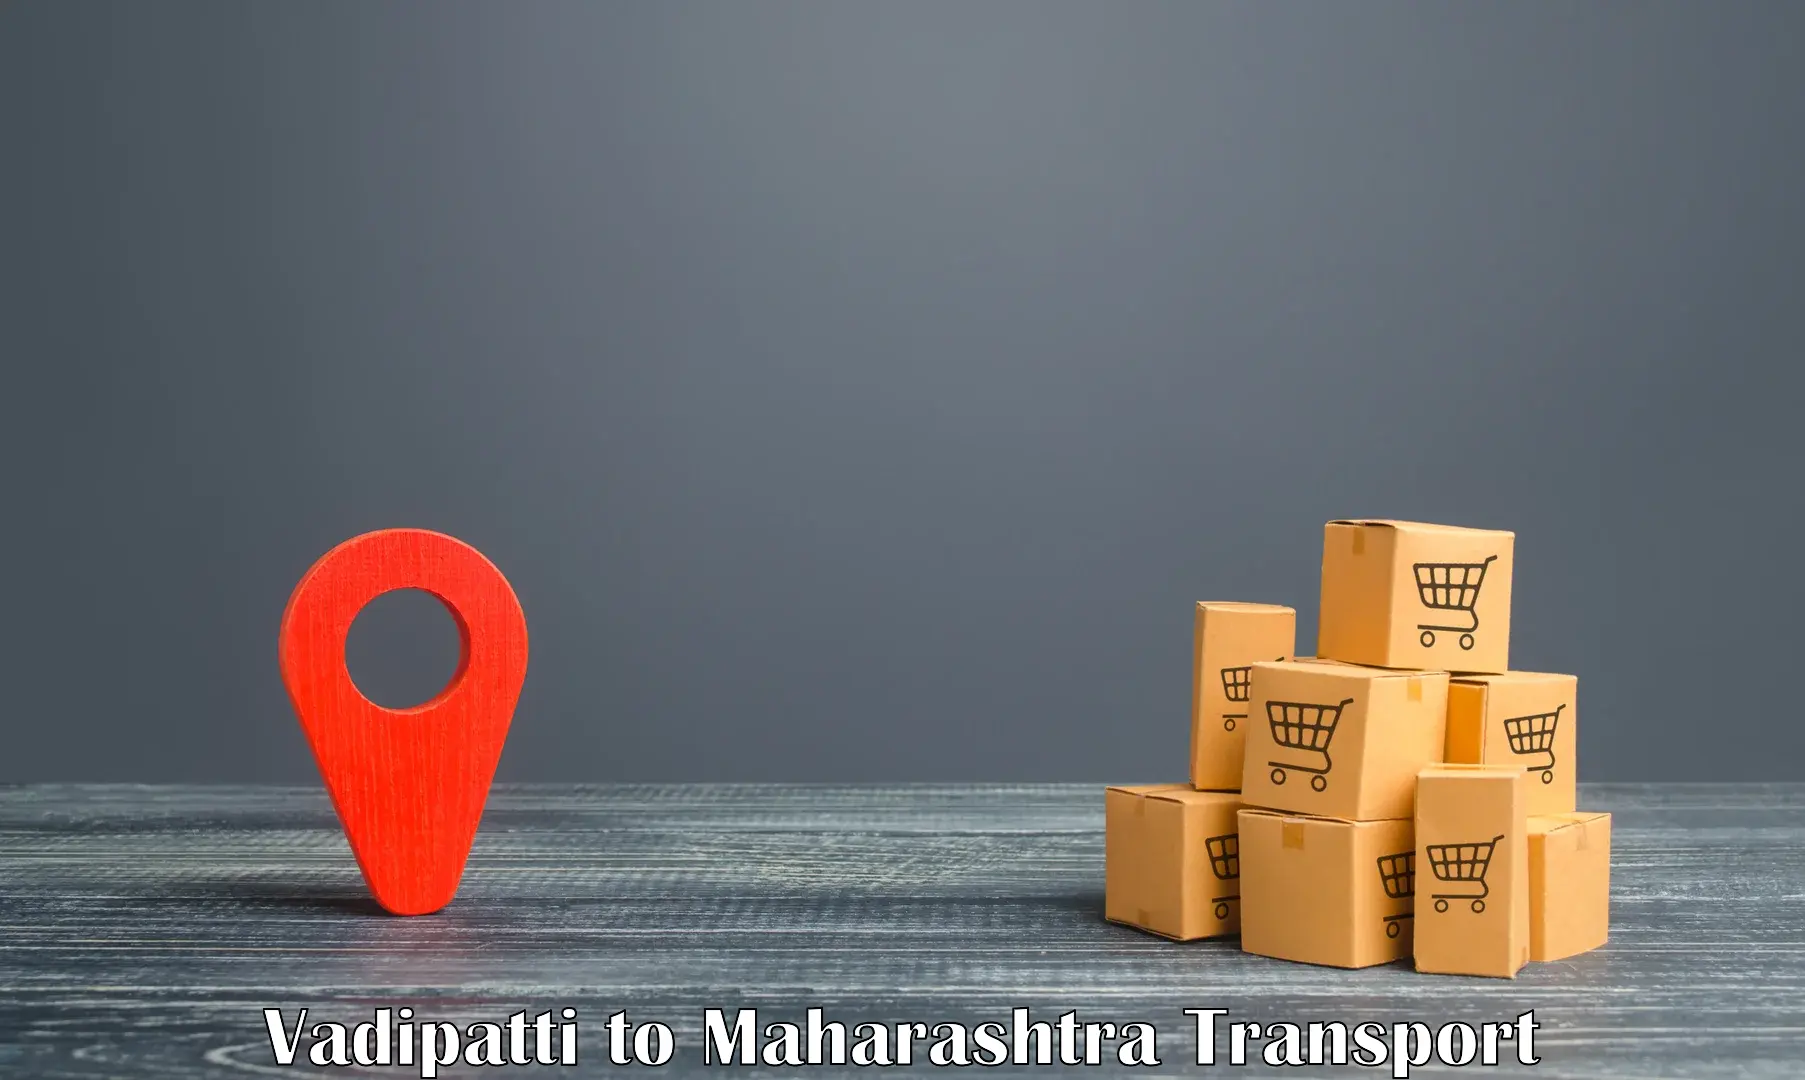 Shipping partner Vadipatti to Maharashtra